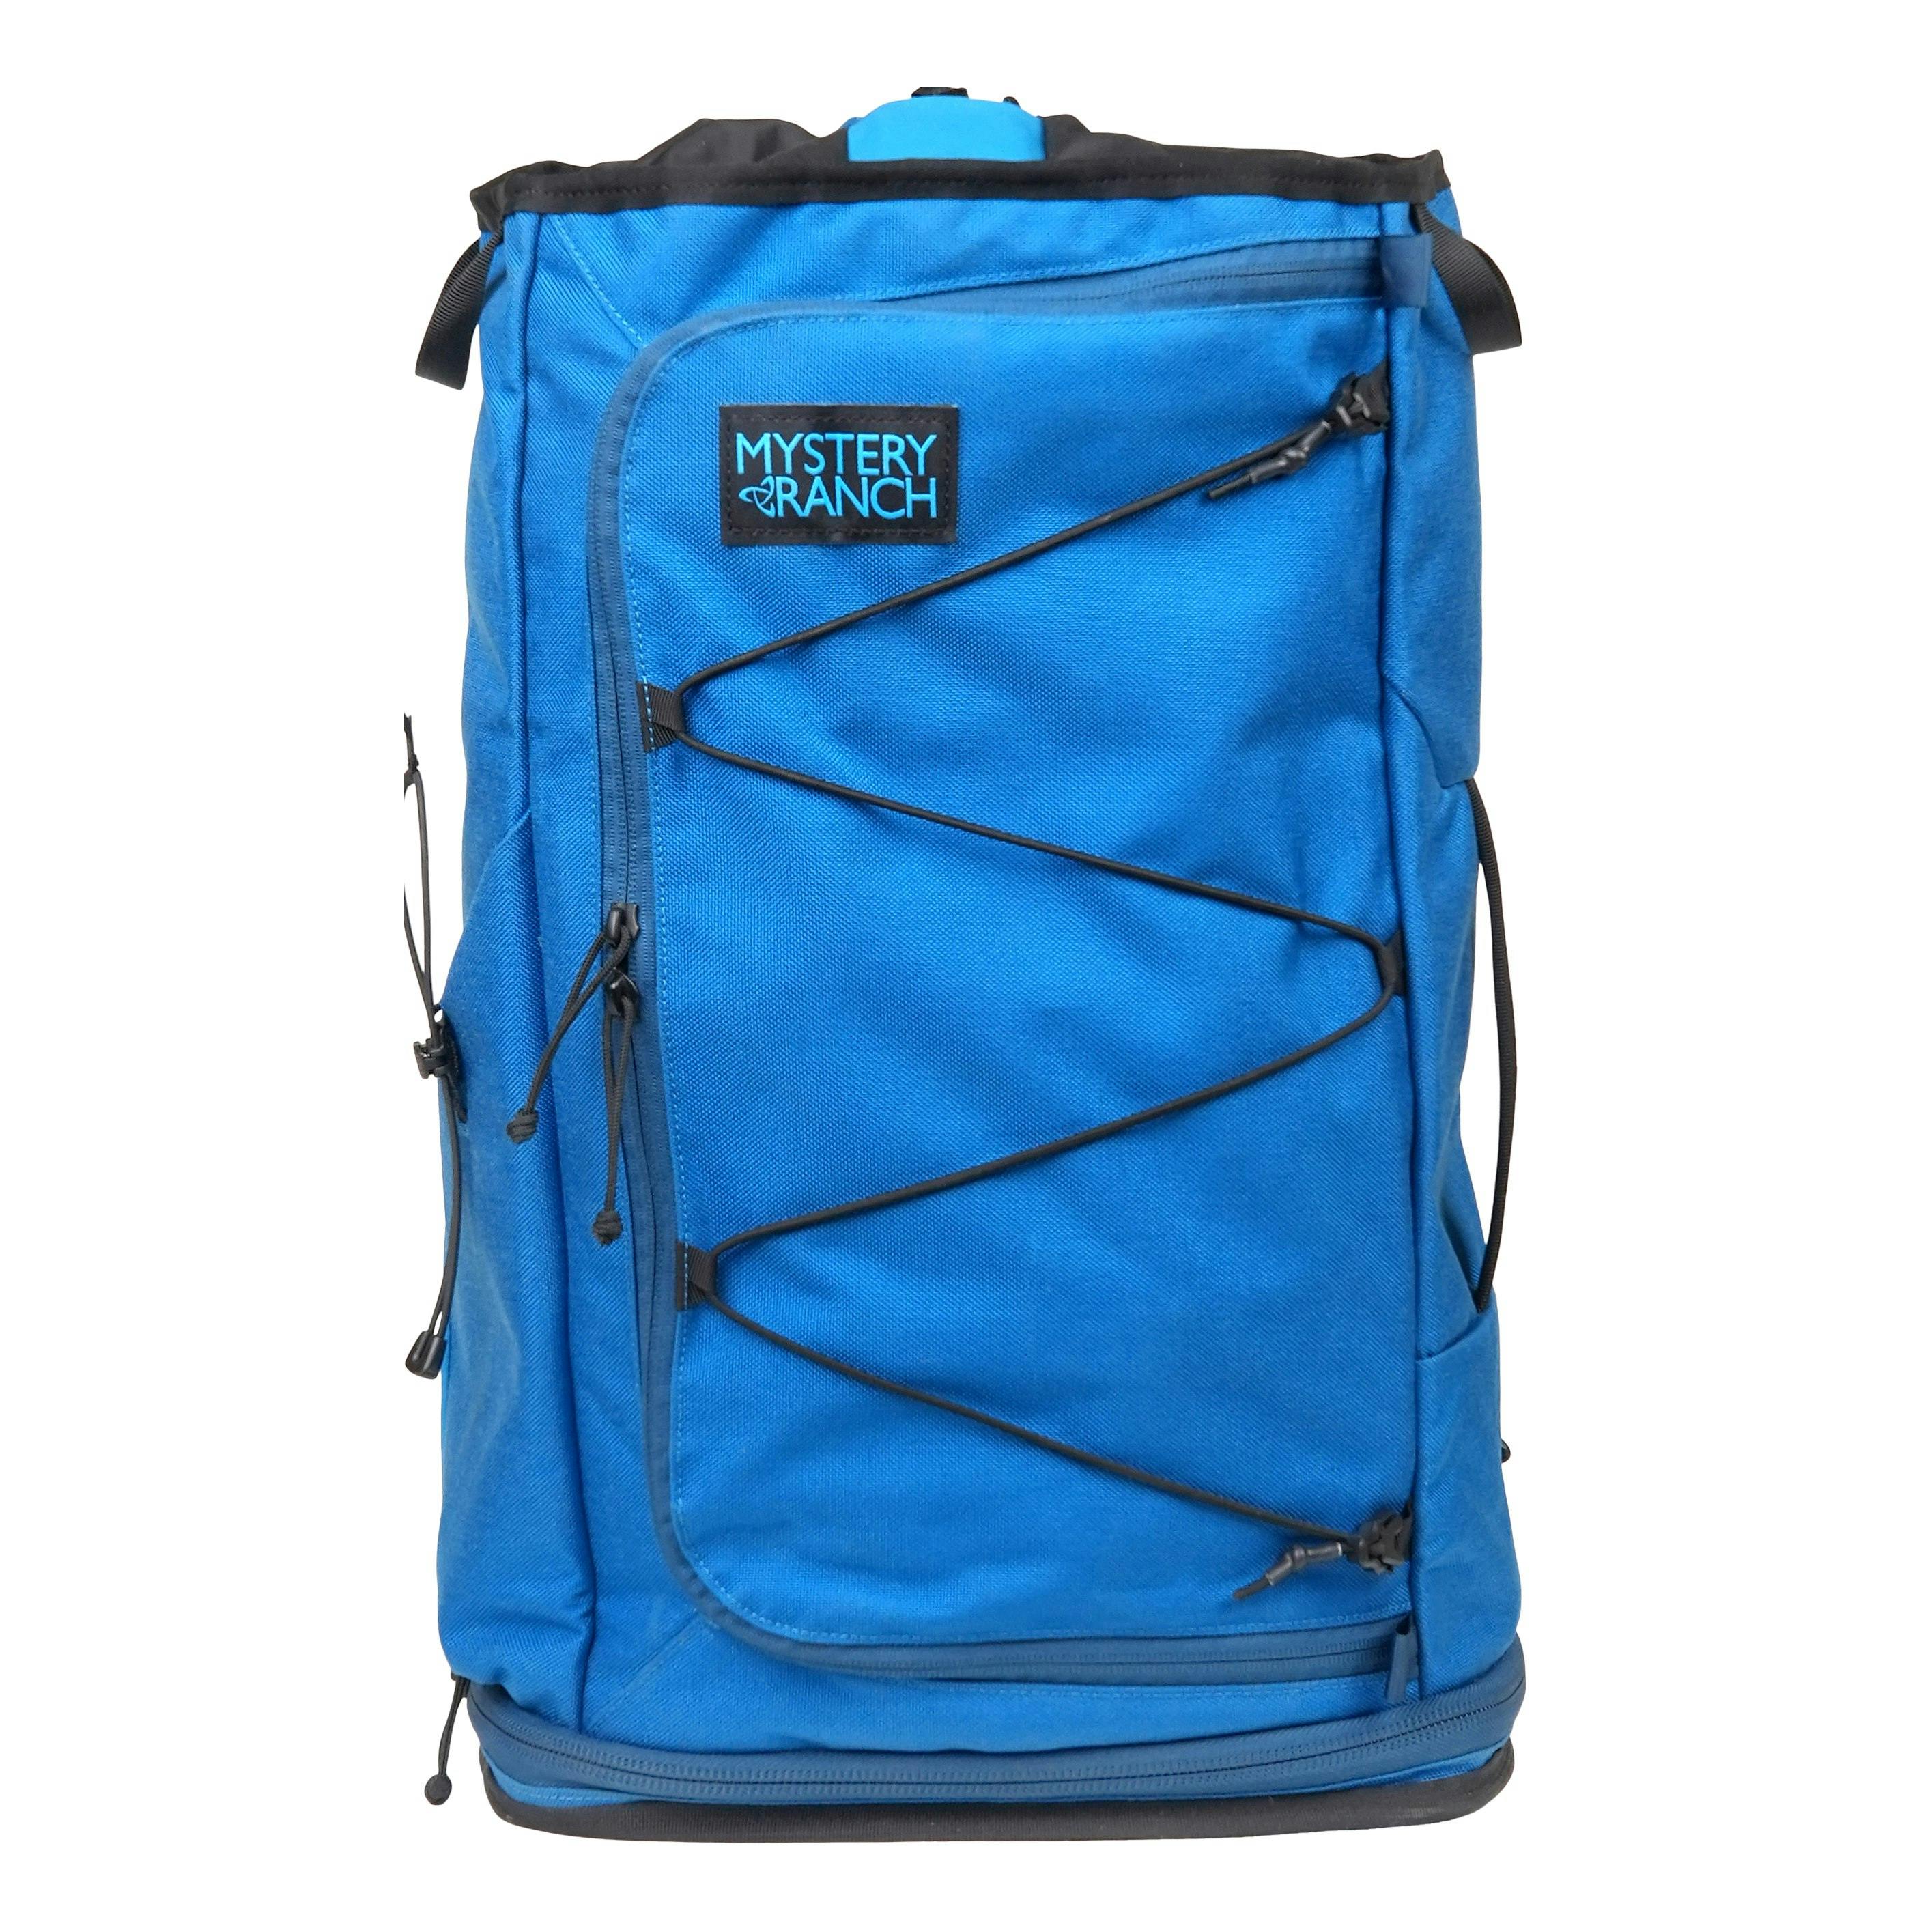 Superset 30 Backpack